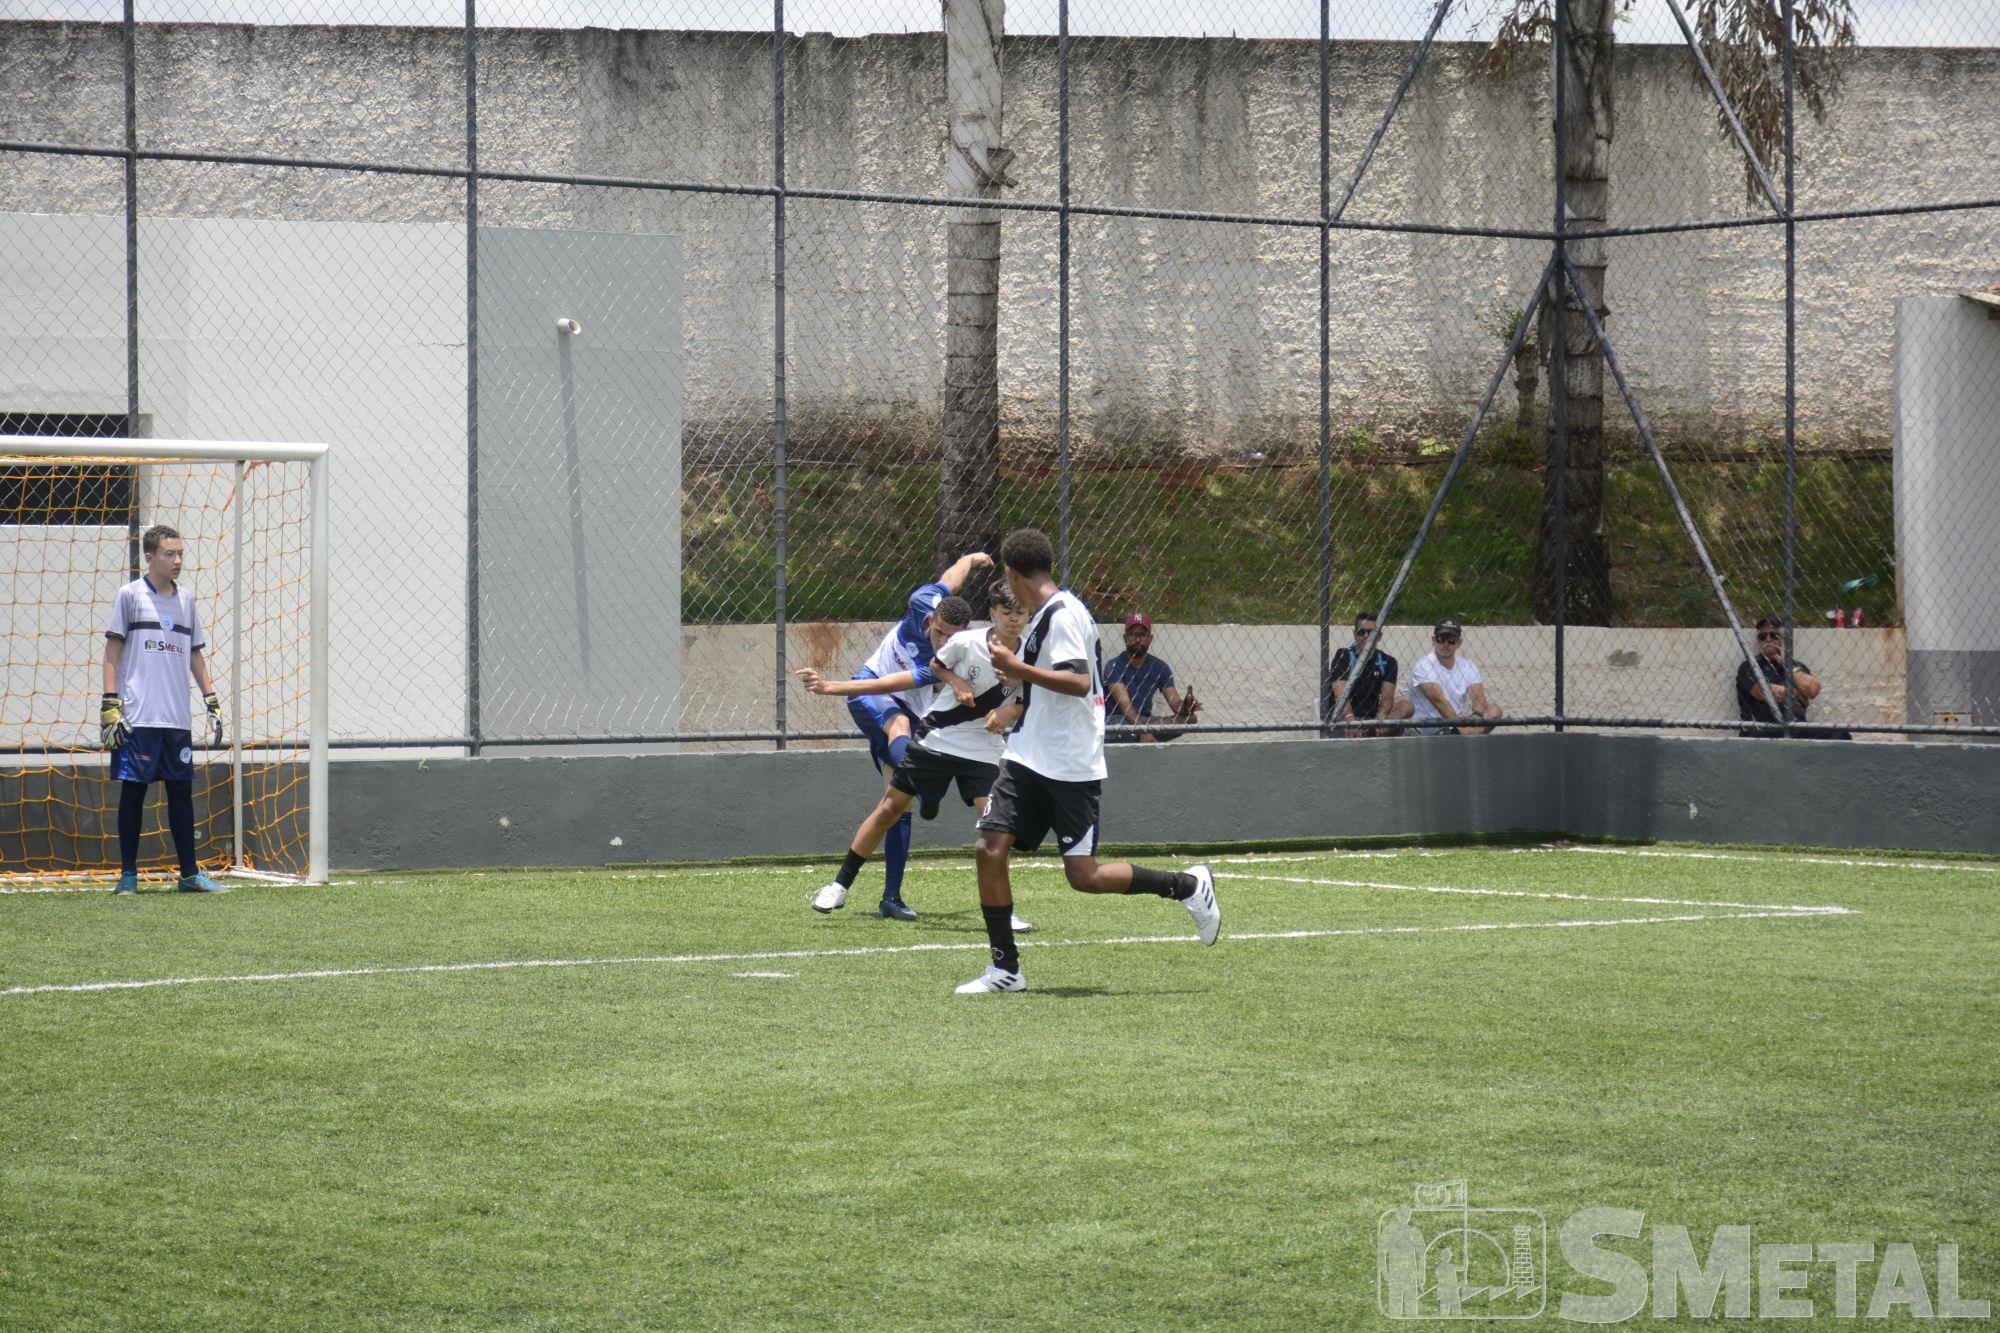 Foguinho/Imprensa SMetal , Alunos da Escolinha São Bento/SMetal jogam 2ª rodada; veja as fotos